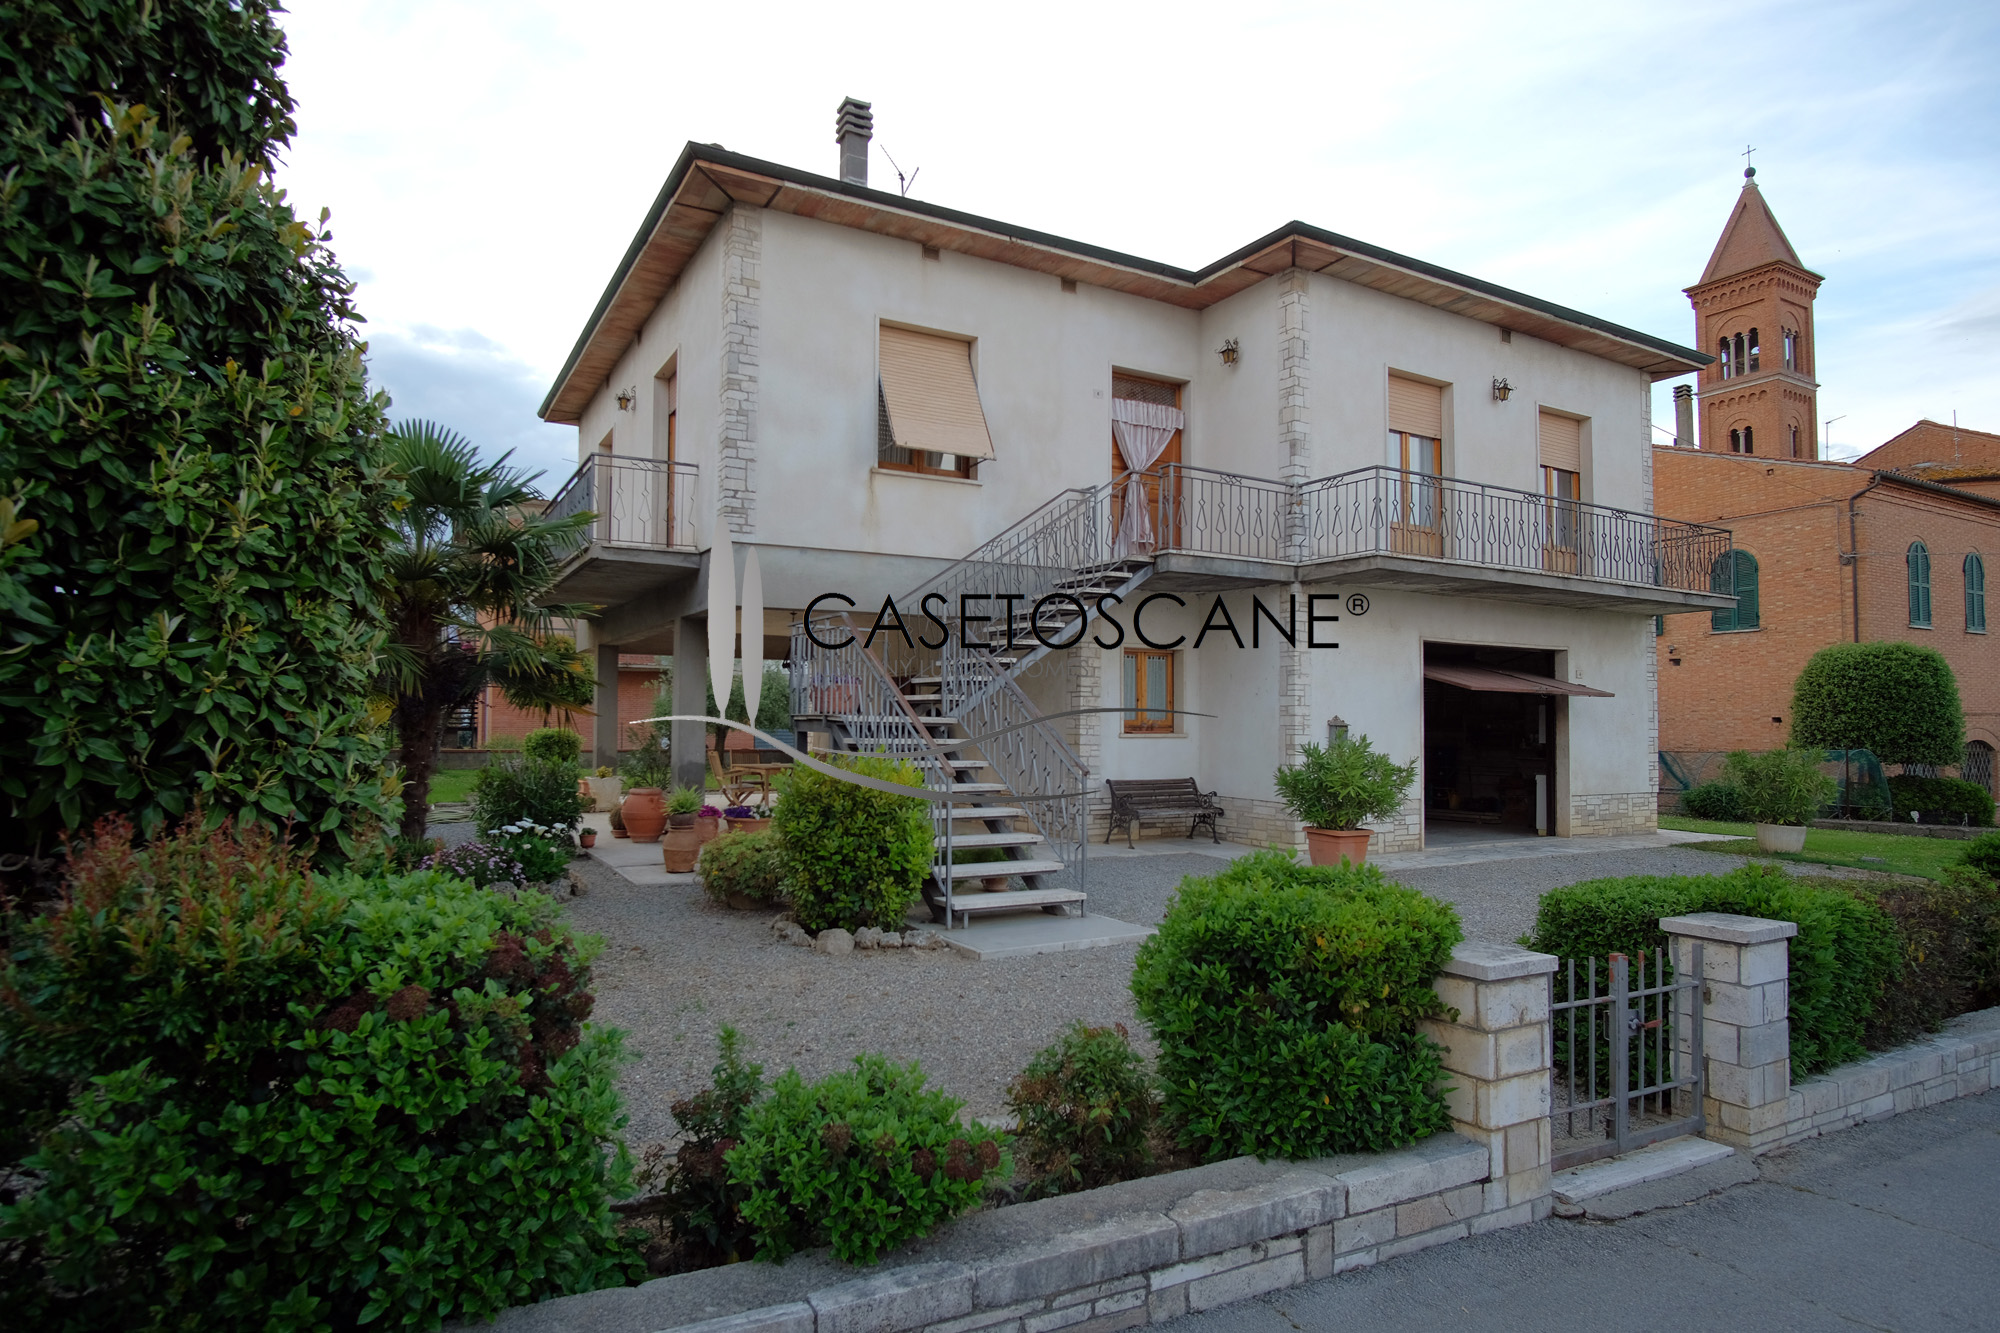 3186 - Villetta singola di mq.280 con ampio garage, taverna, appartamento con 4 camere e giardino privato a Montepulciano Stazione (SI).